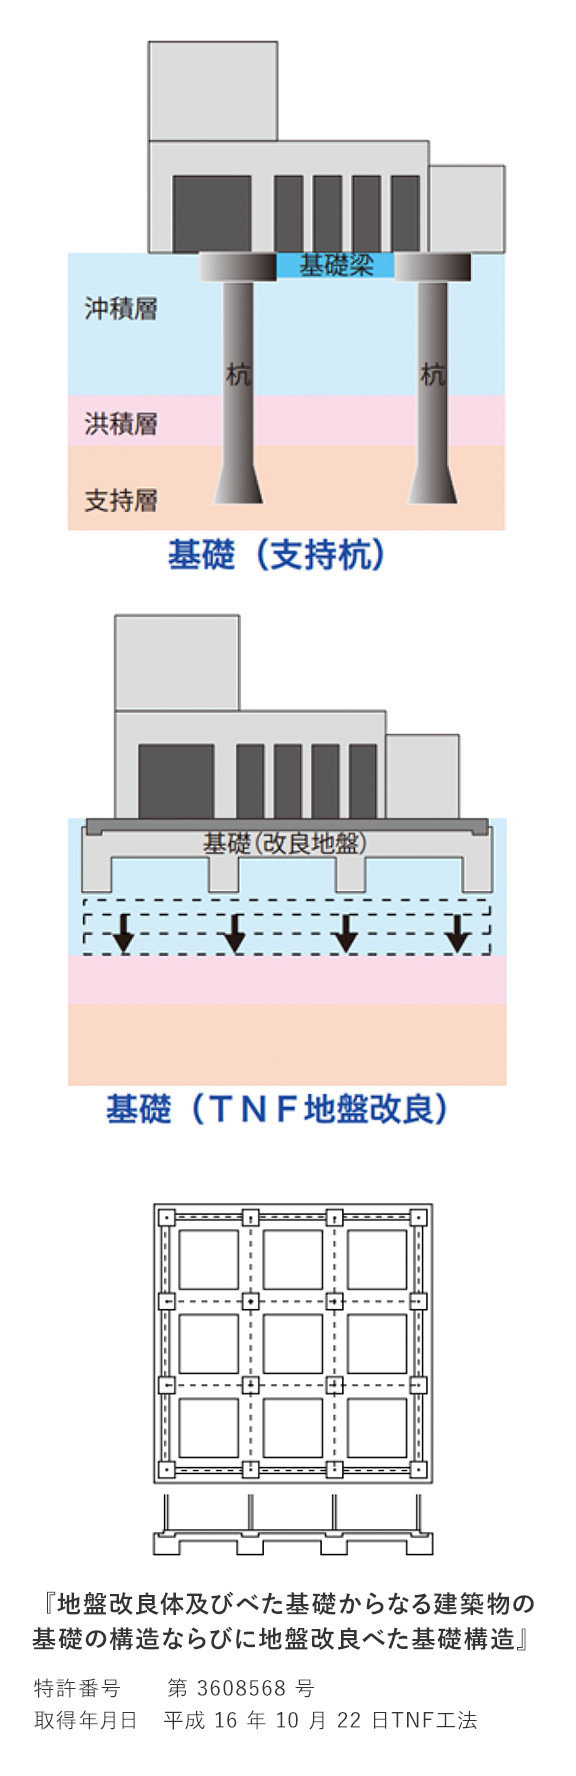 基礎（支持杭）と基礎（TNF地盤改良）の比較図、「地盤改良体及びべた基礎からなる建築物の基礎の構造ならびに地盤改良べた基礎構造」特許番号：第3608568号 取得年月日：平成16年10月22日 TNF工法